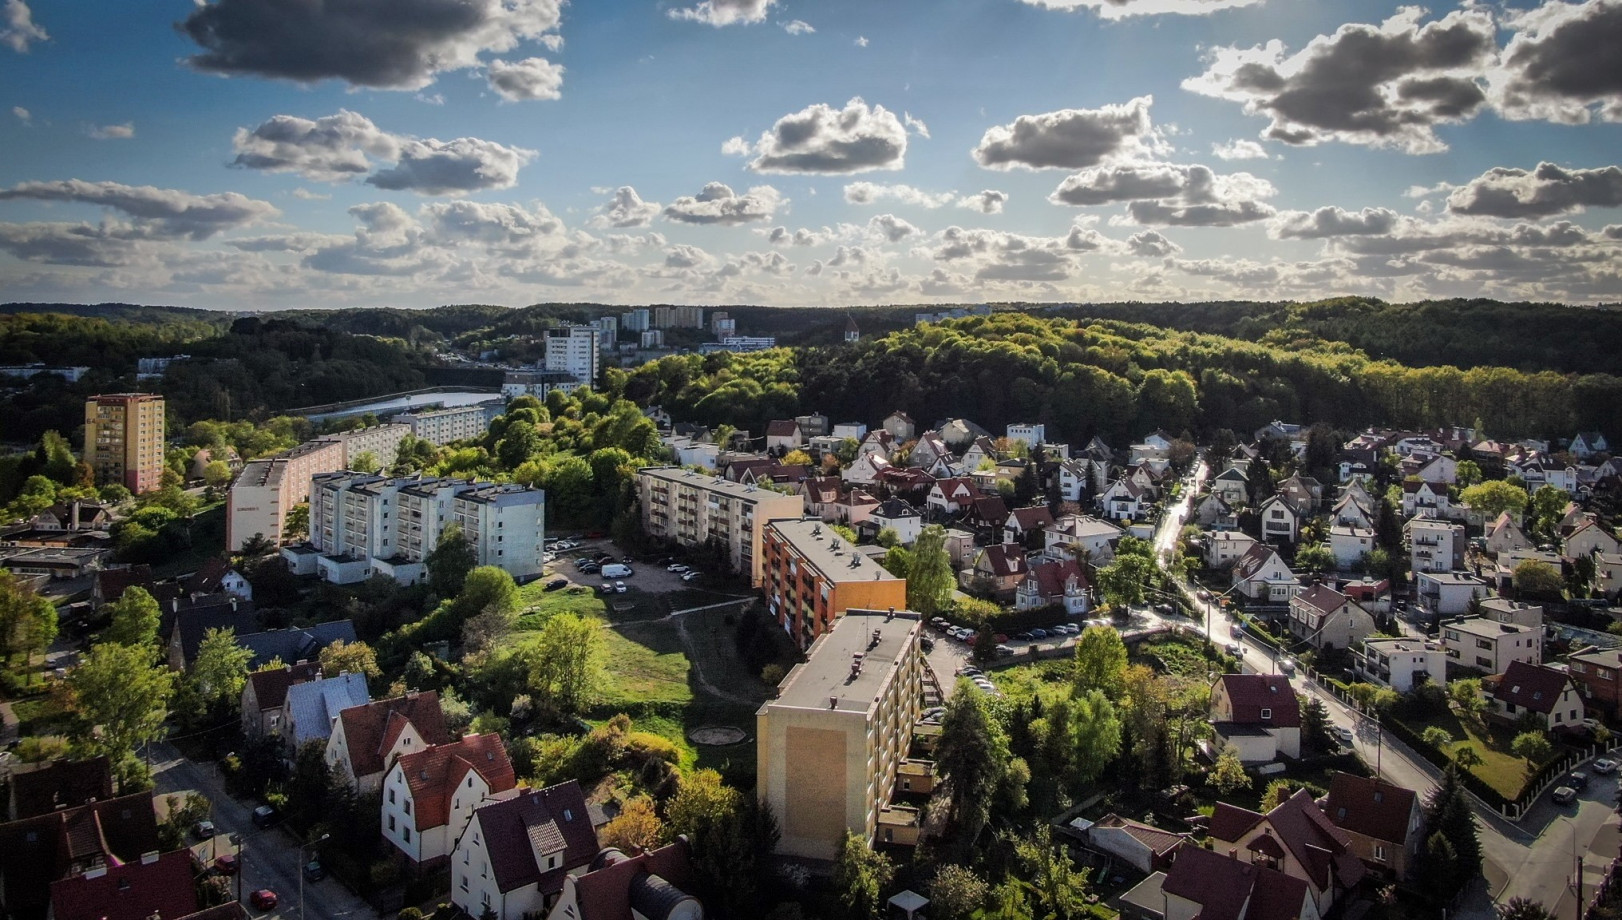 zdjęcia gdansk fotograf wisetechnology portfolio zdjecia krajobrazu gory mazury